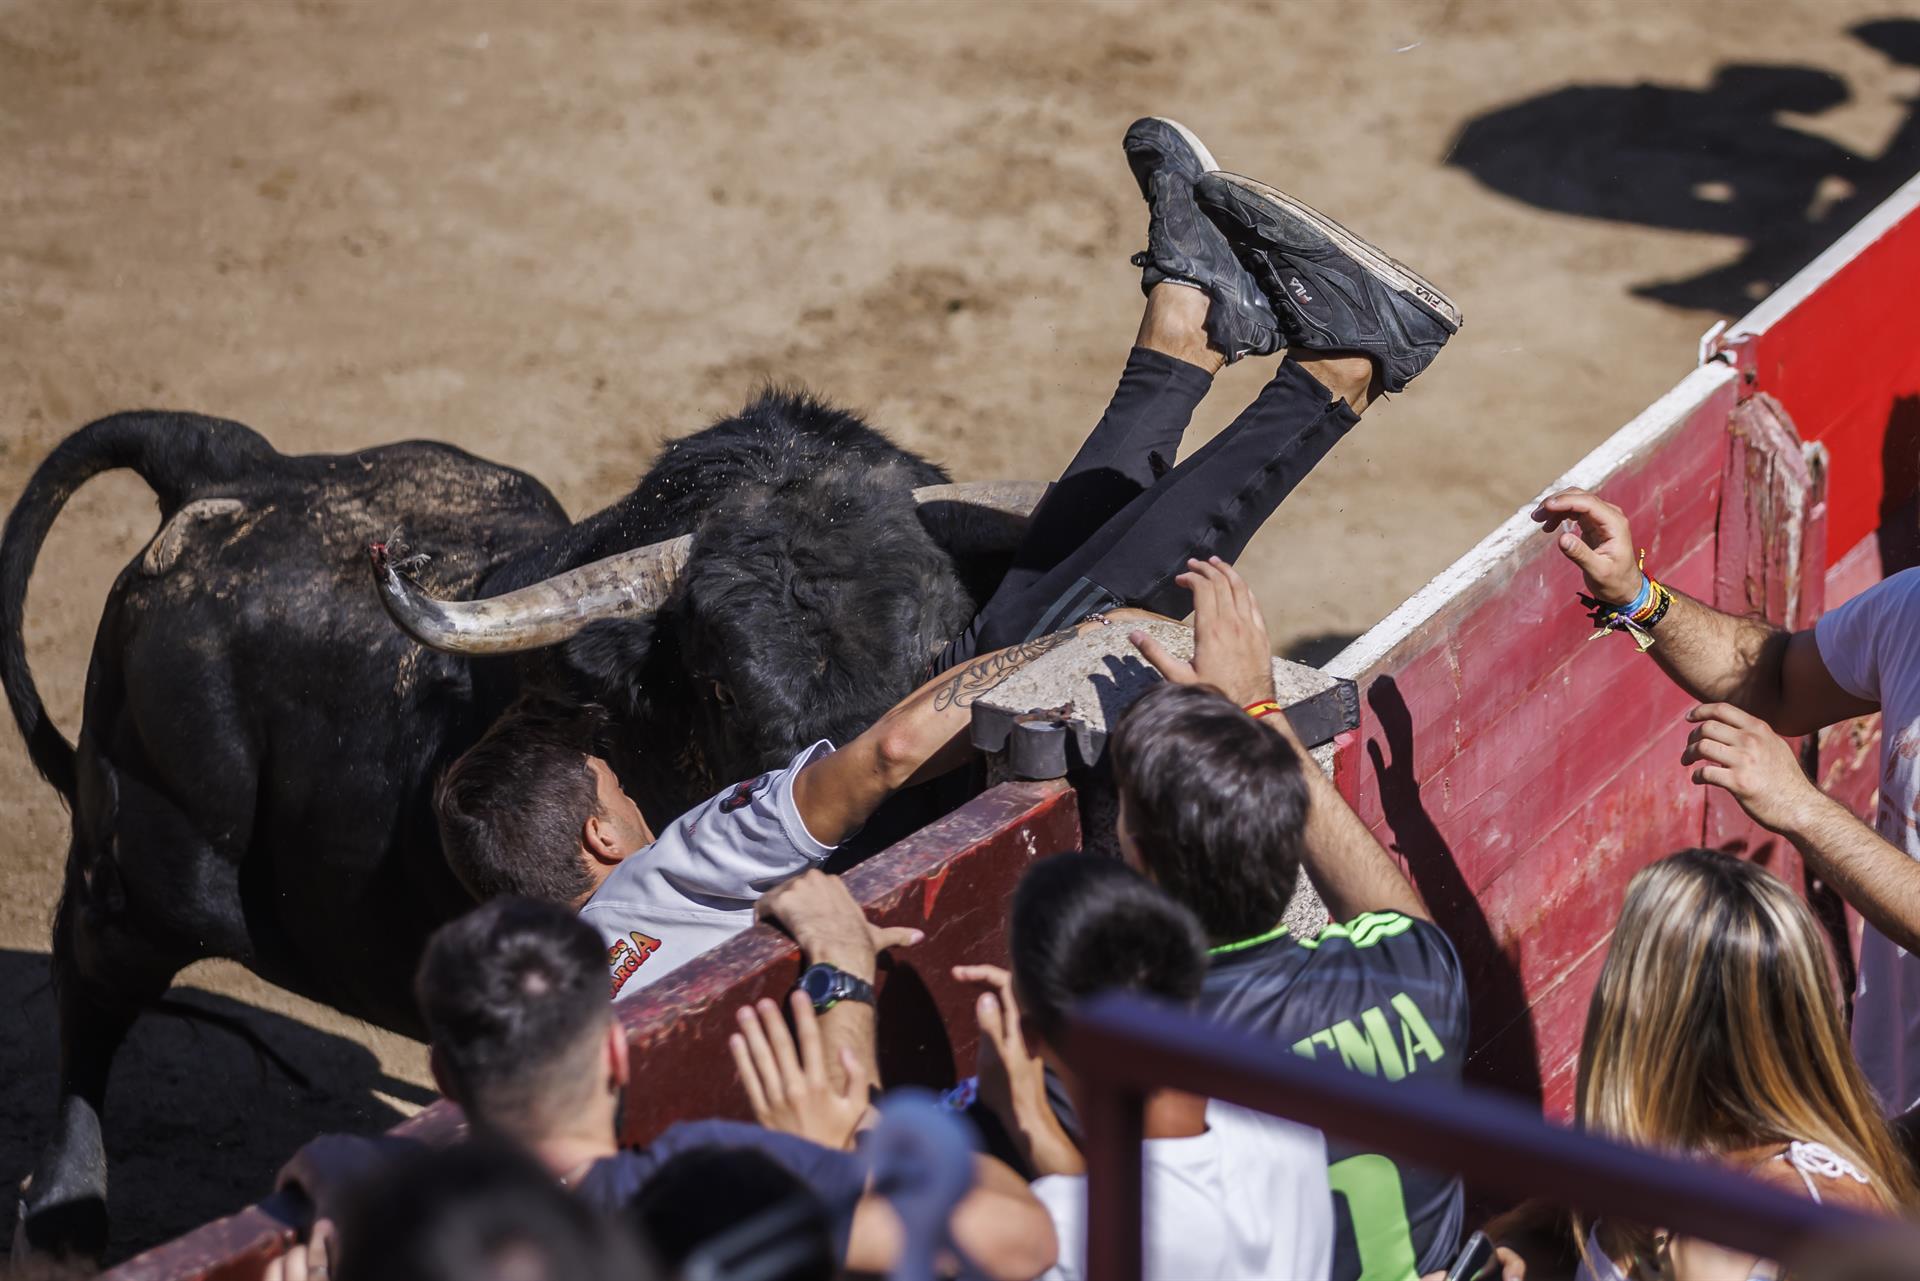 El sexto encierro de San Sebastián de los Reyes se ha saldado con un herido por contusión en el costado -un pastor que guiaba a los toros en el encierro- y un hombre que ha sido corneado en el muslo durante la suelta de reses posterior al encierro. EFE/Rodrigo Jimenez